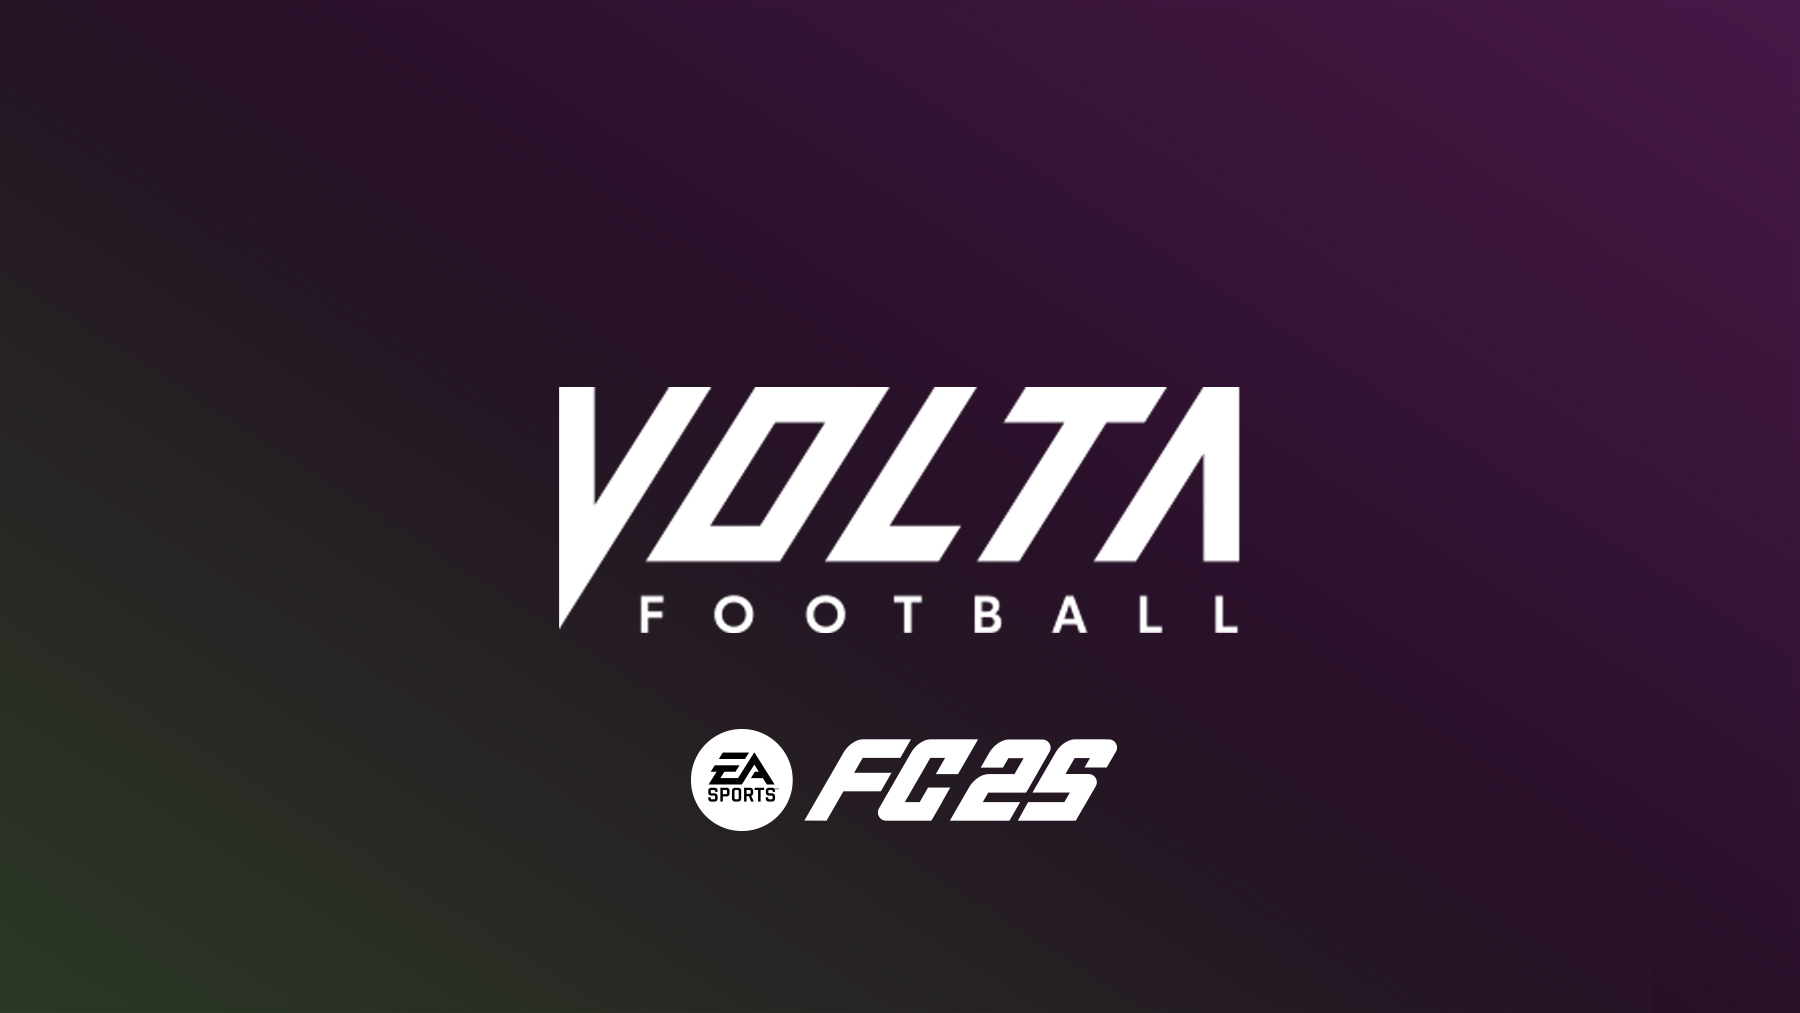 FC 25 Volta Football